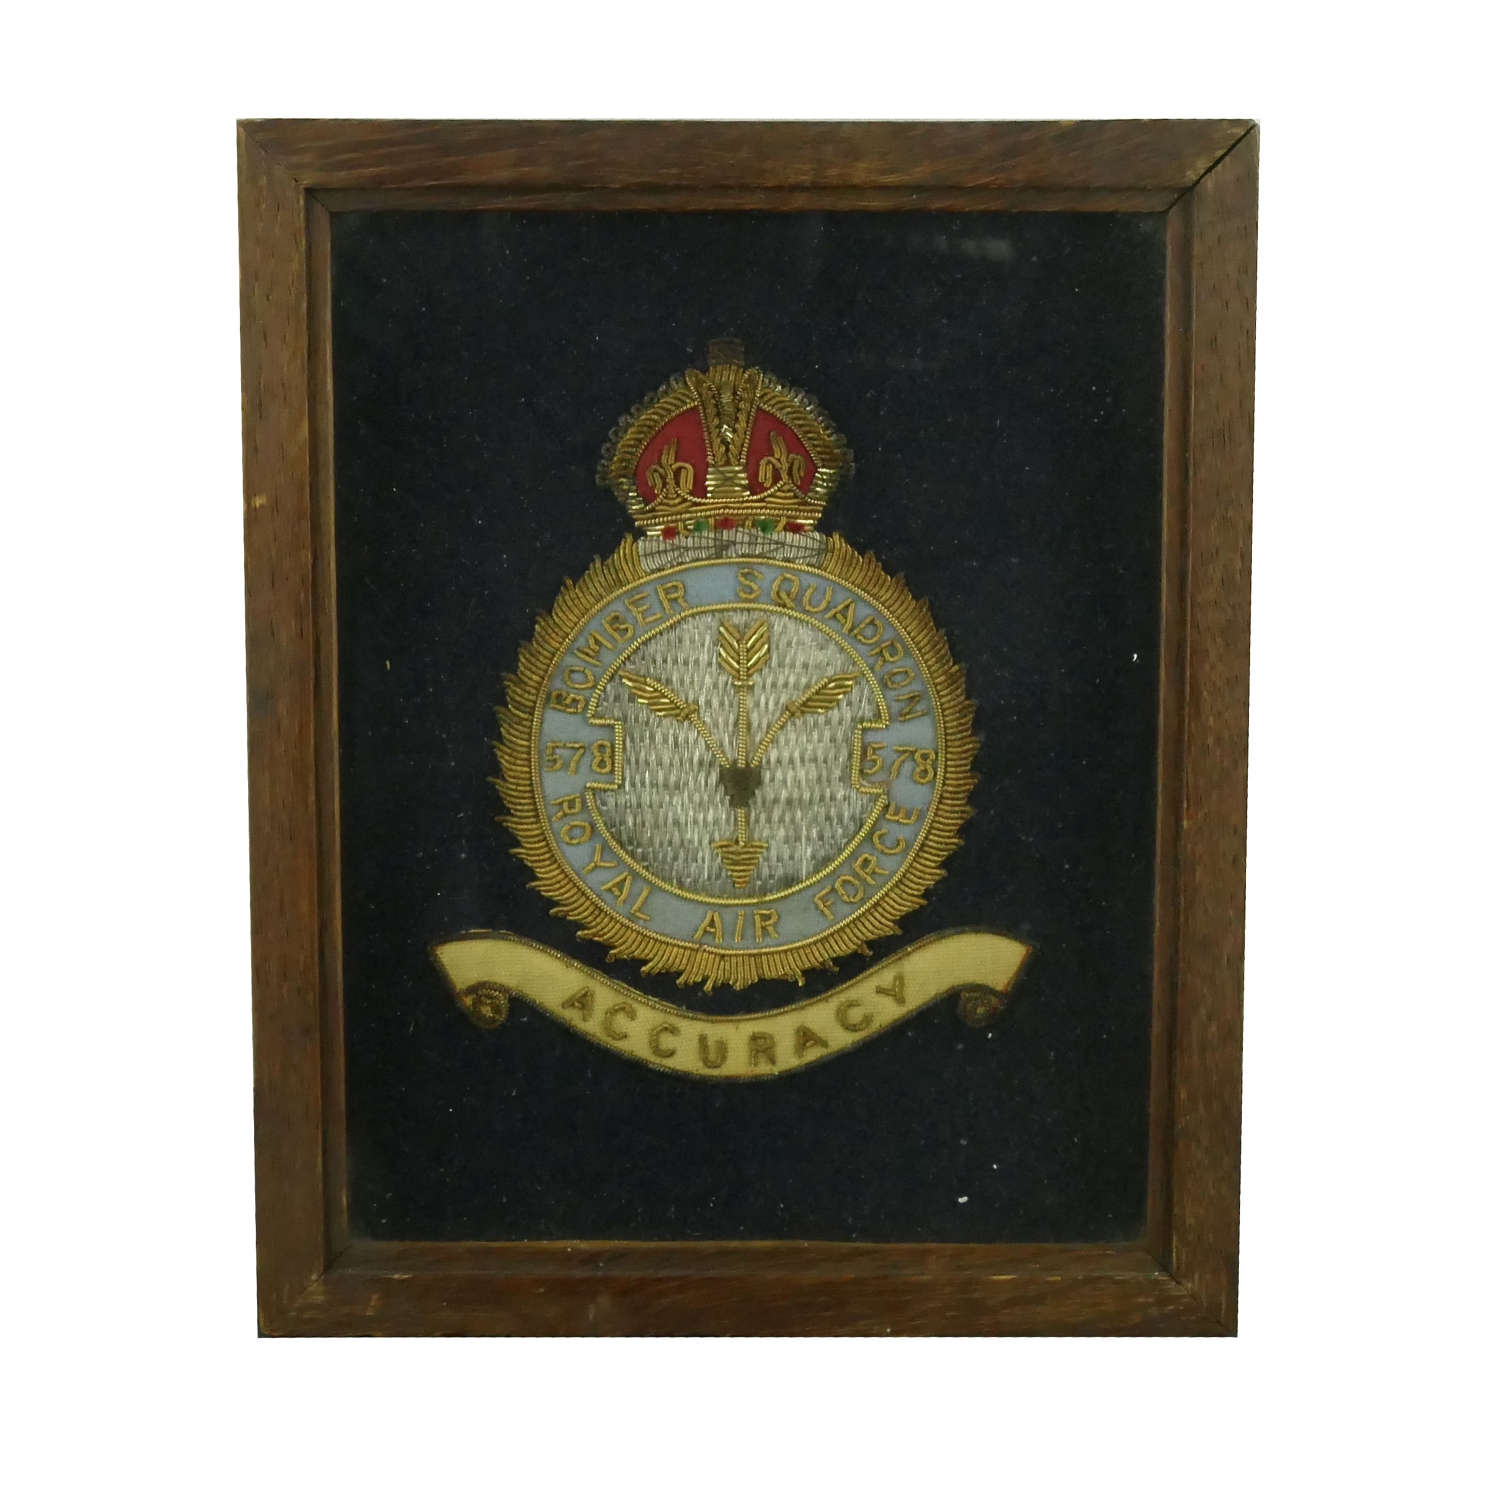 RAF 578 squadron badge, framed